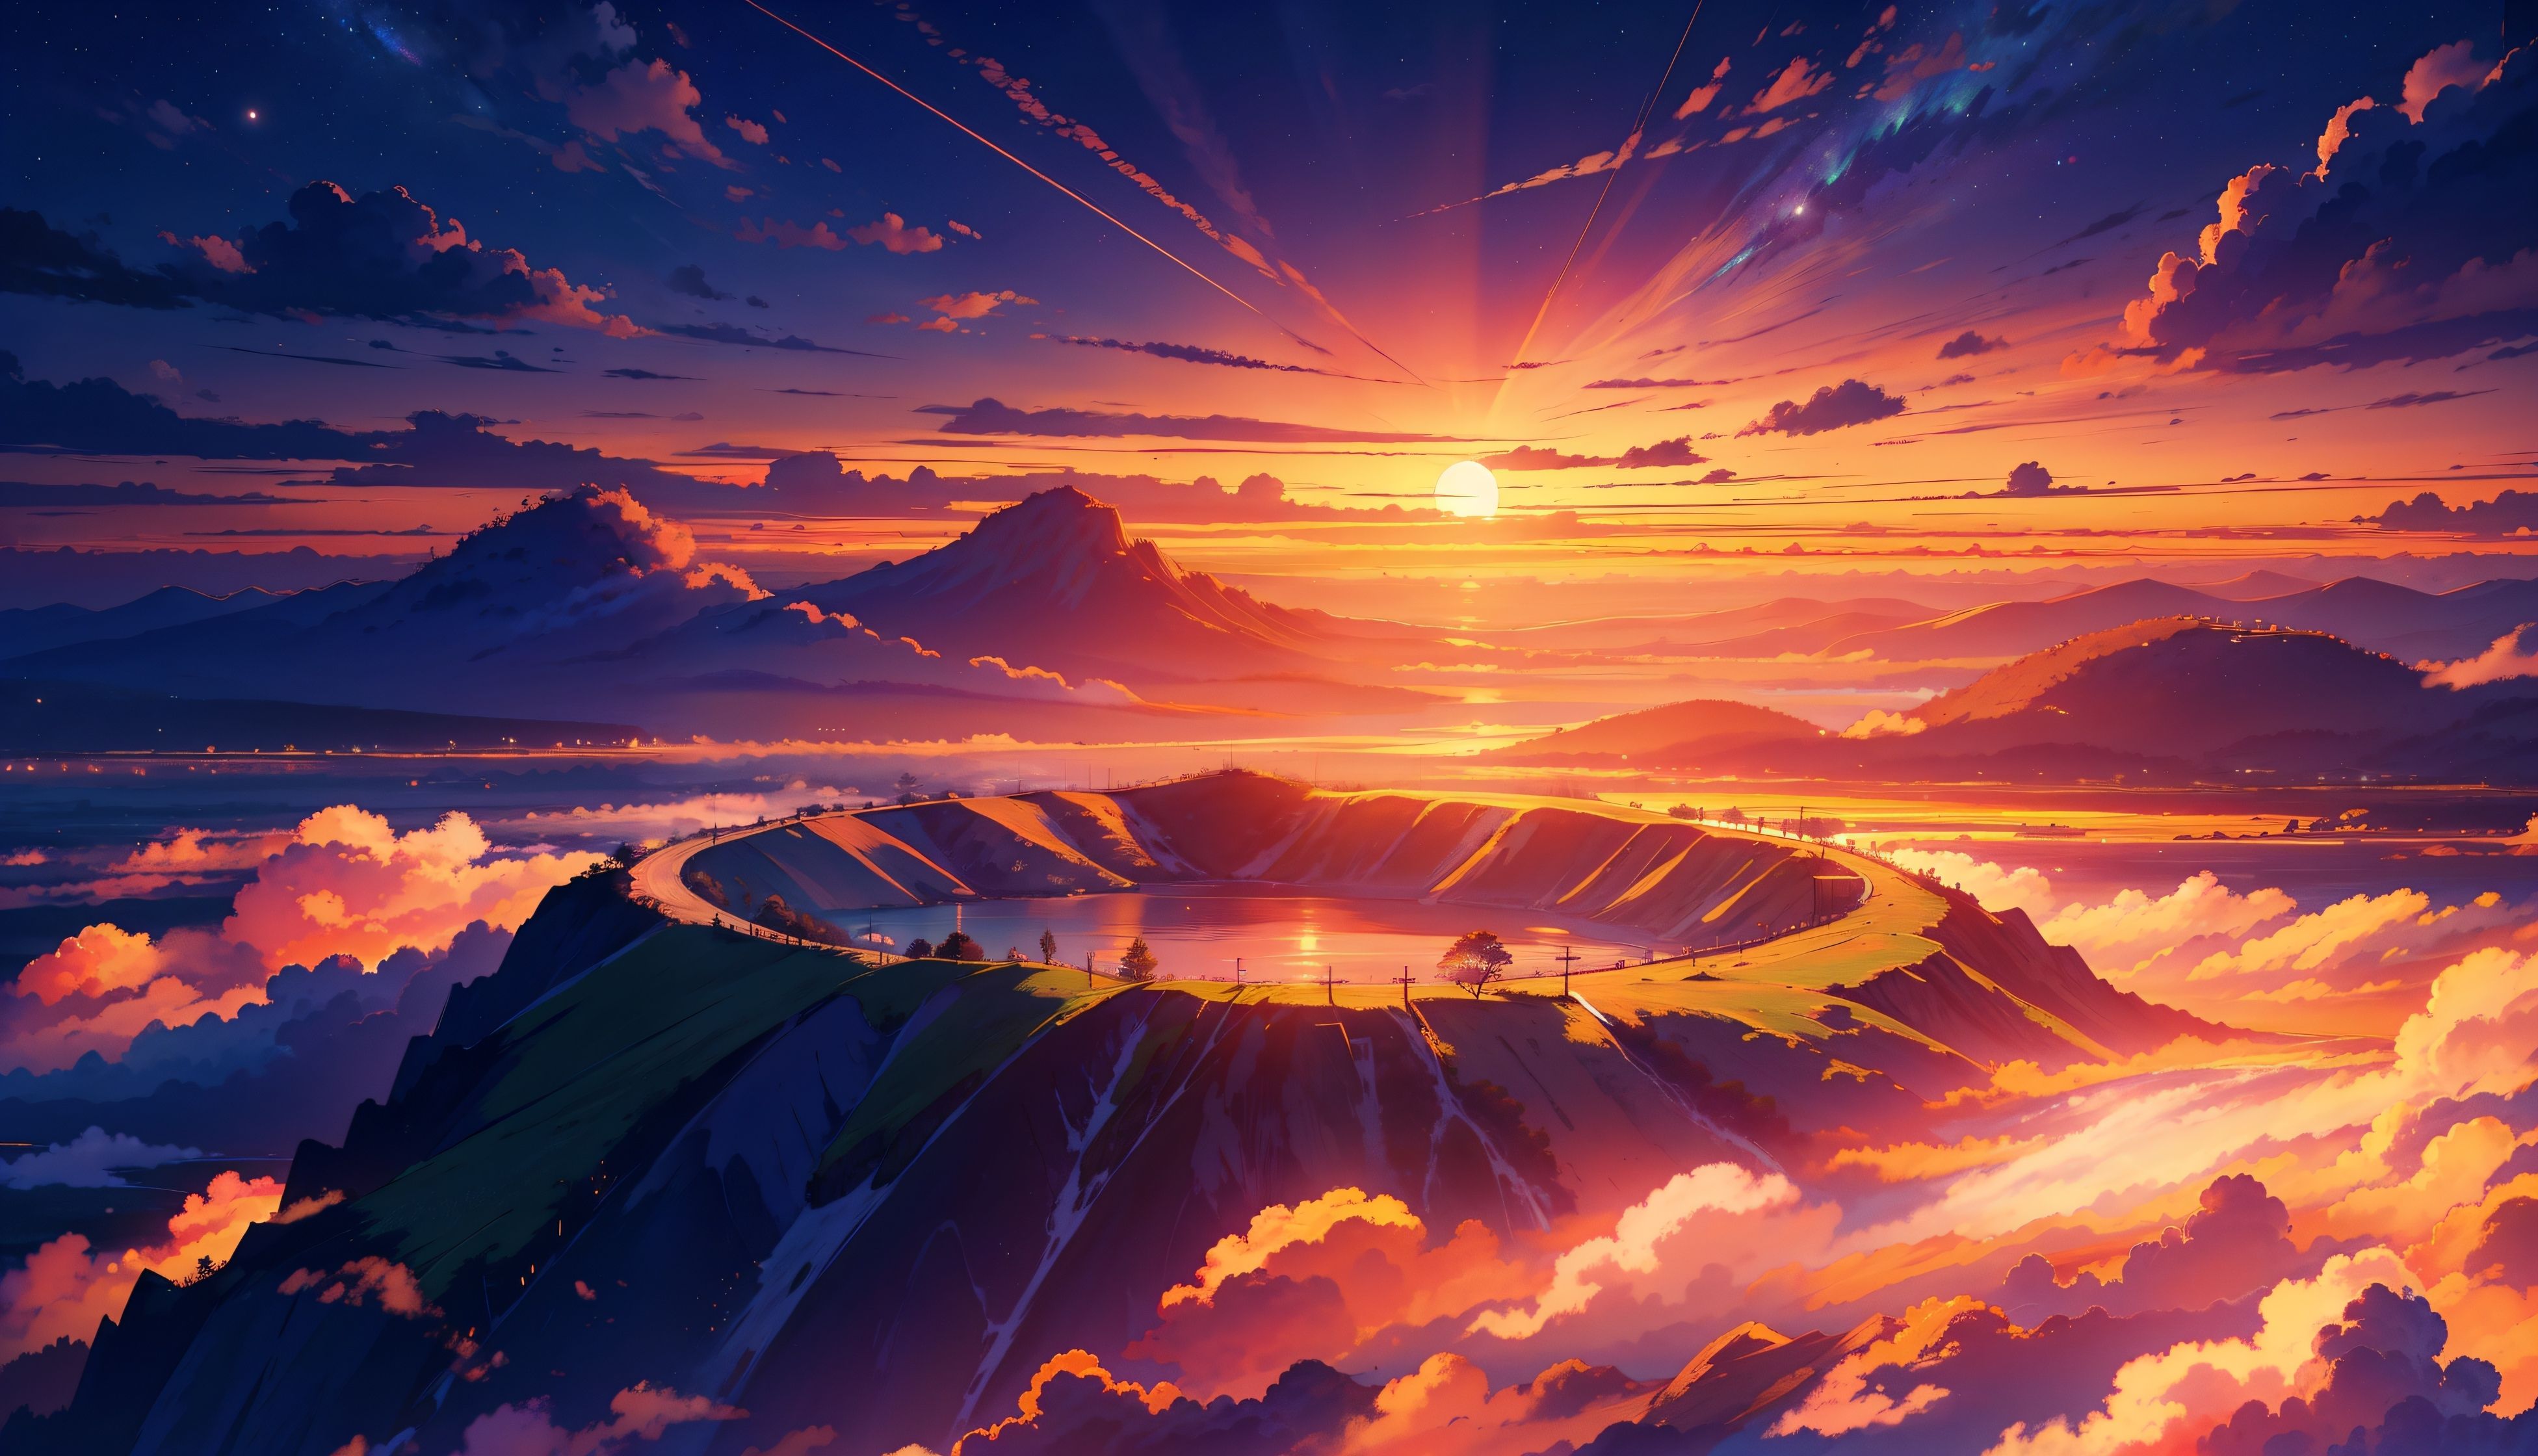 Anime Sunset 4K Aesthetic Digital Wallpaper, HD Artist 4K Wallpaper, Image and Background